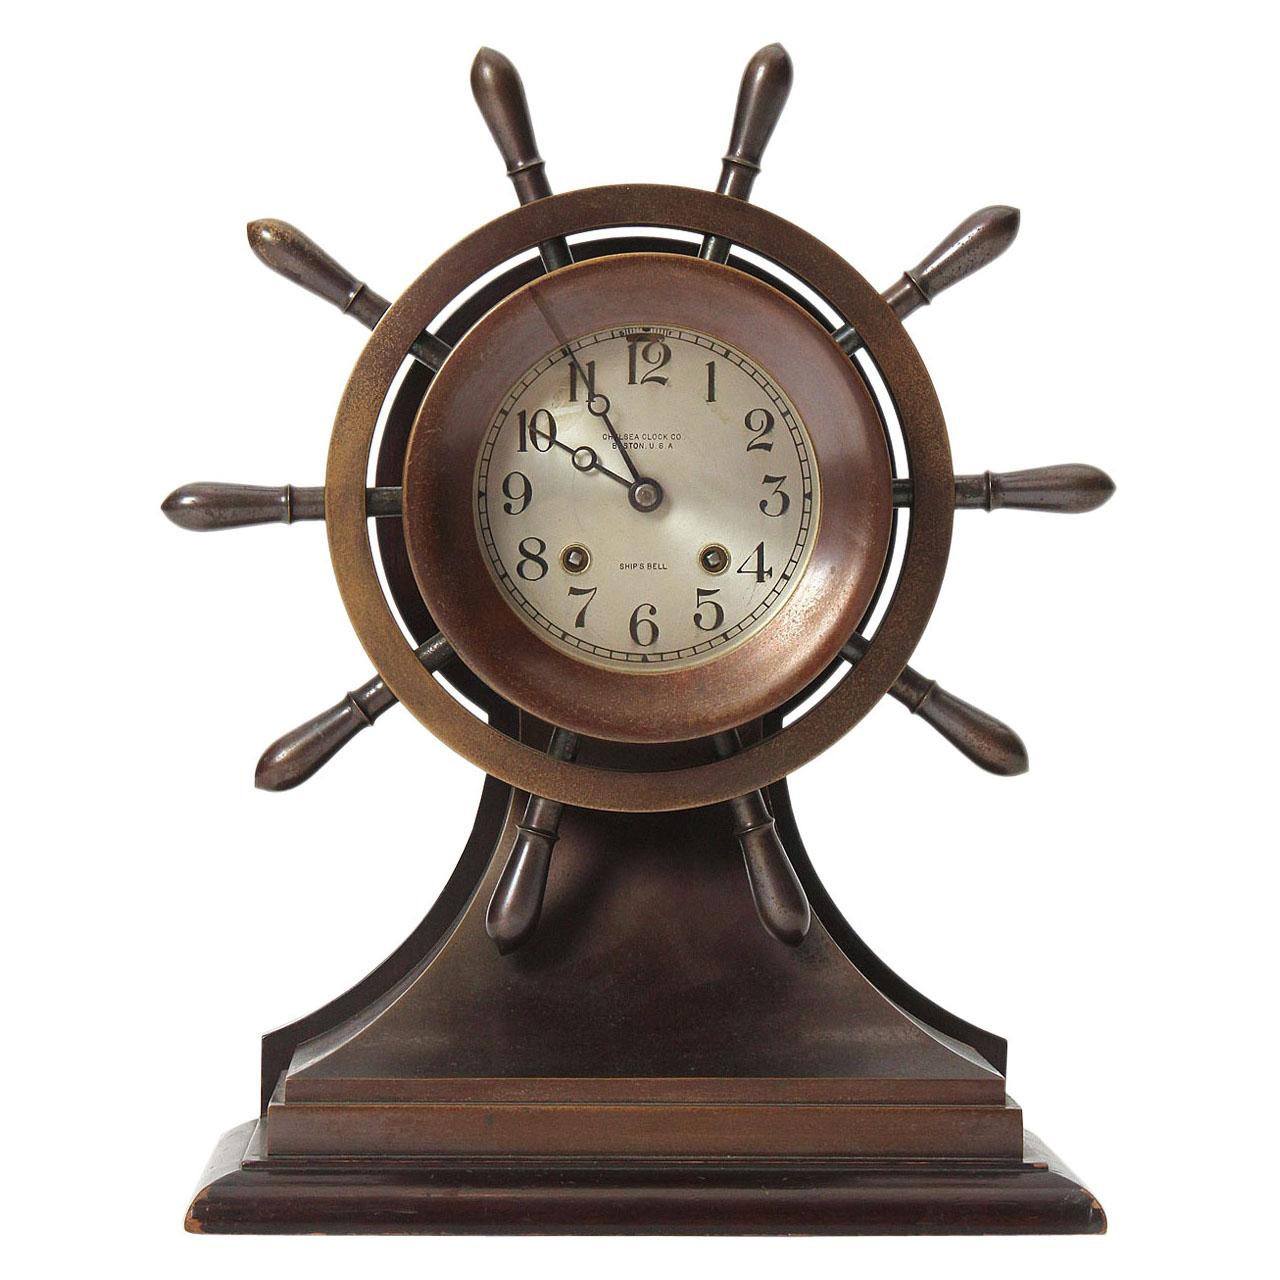 Nautische Uhr aus den 1930er Jahren von Chelsea Clock Company für Bigelow Kennard & Co.